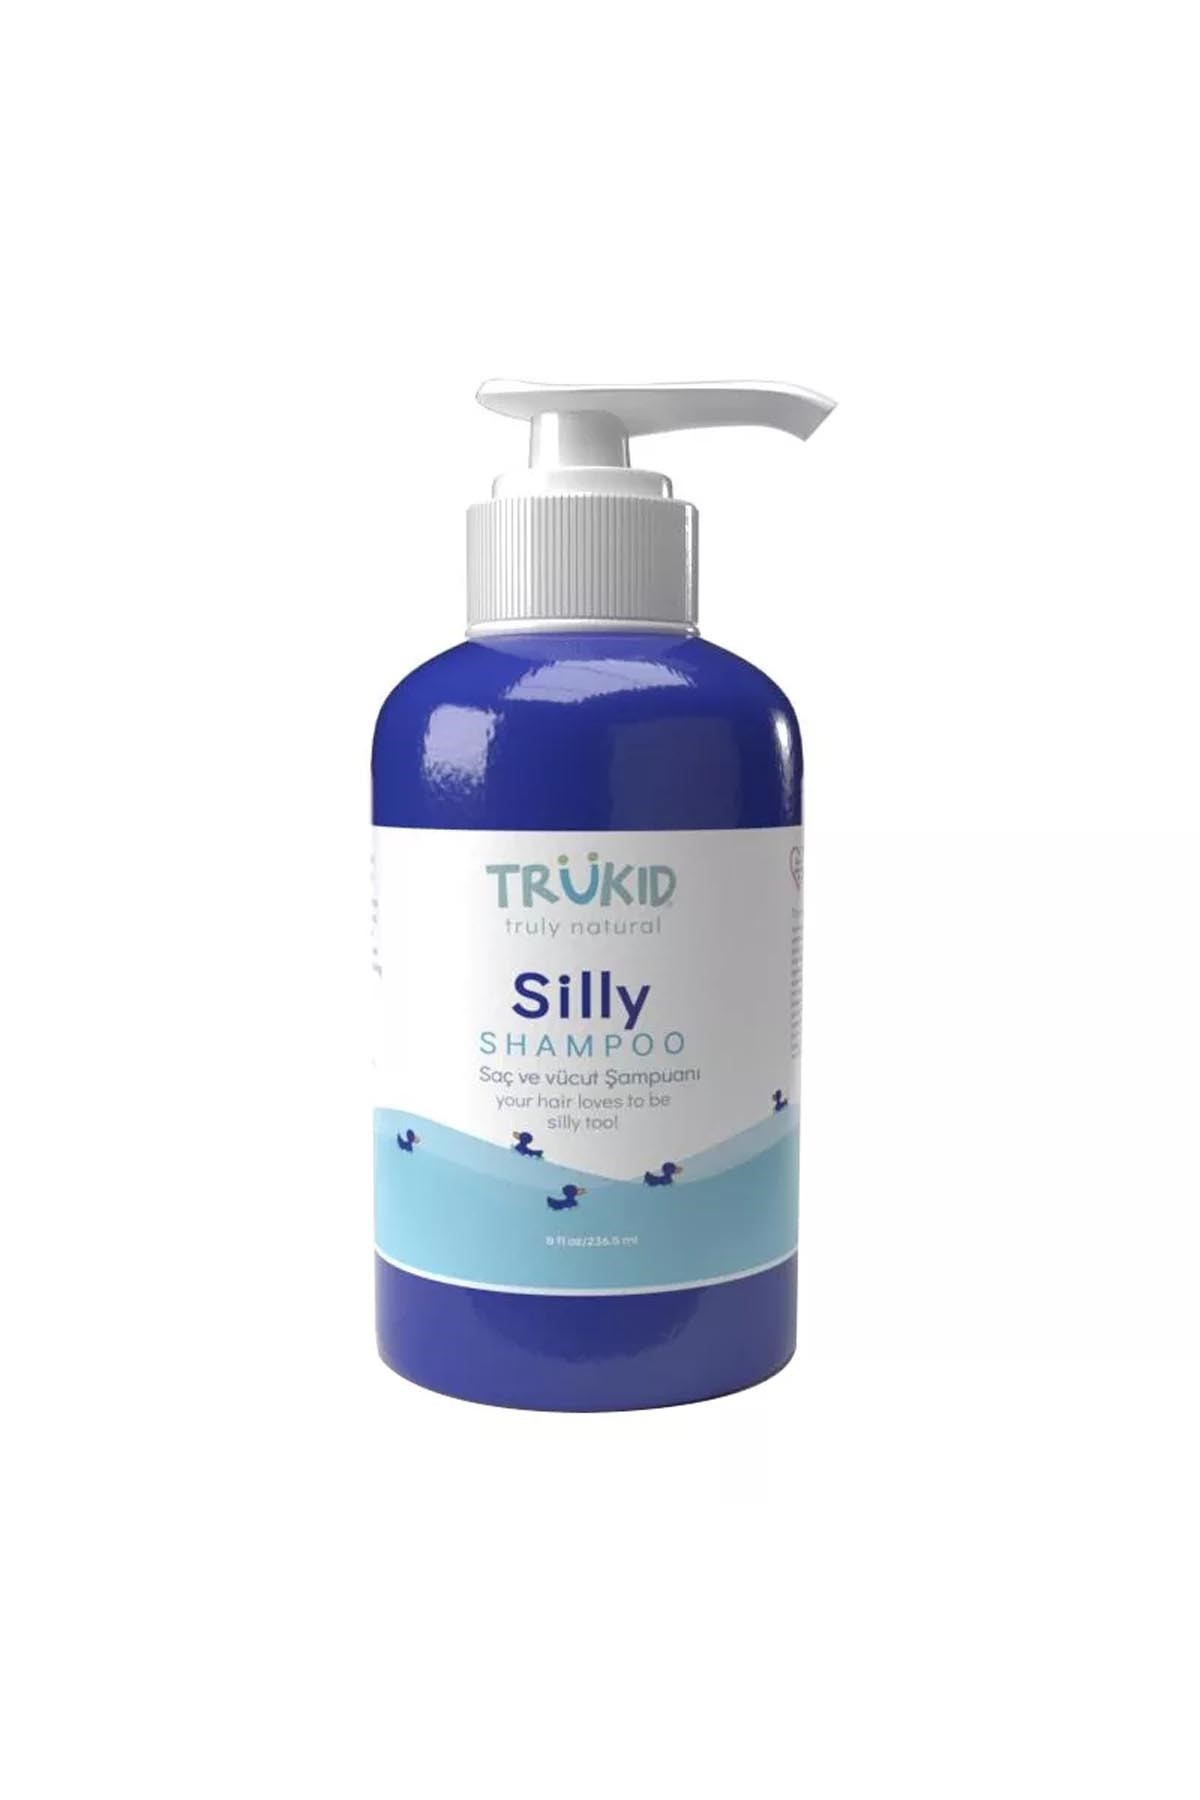 Trukid Silly Shampoo 236 ml